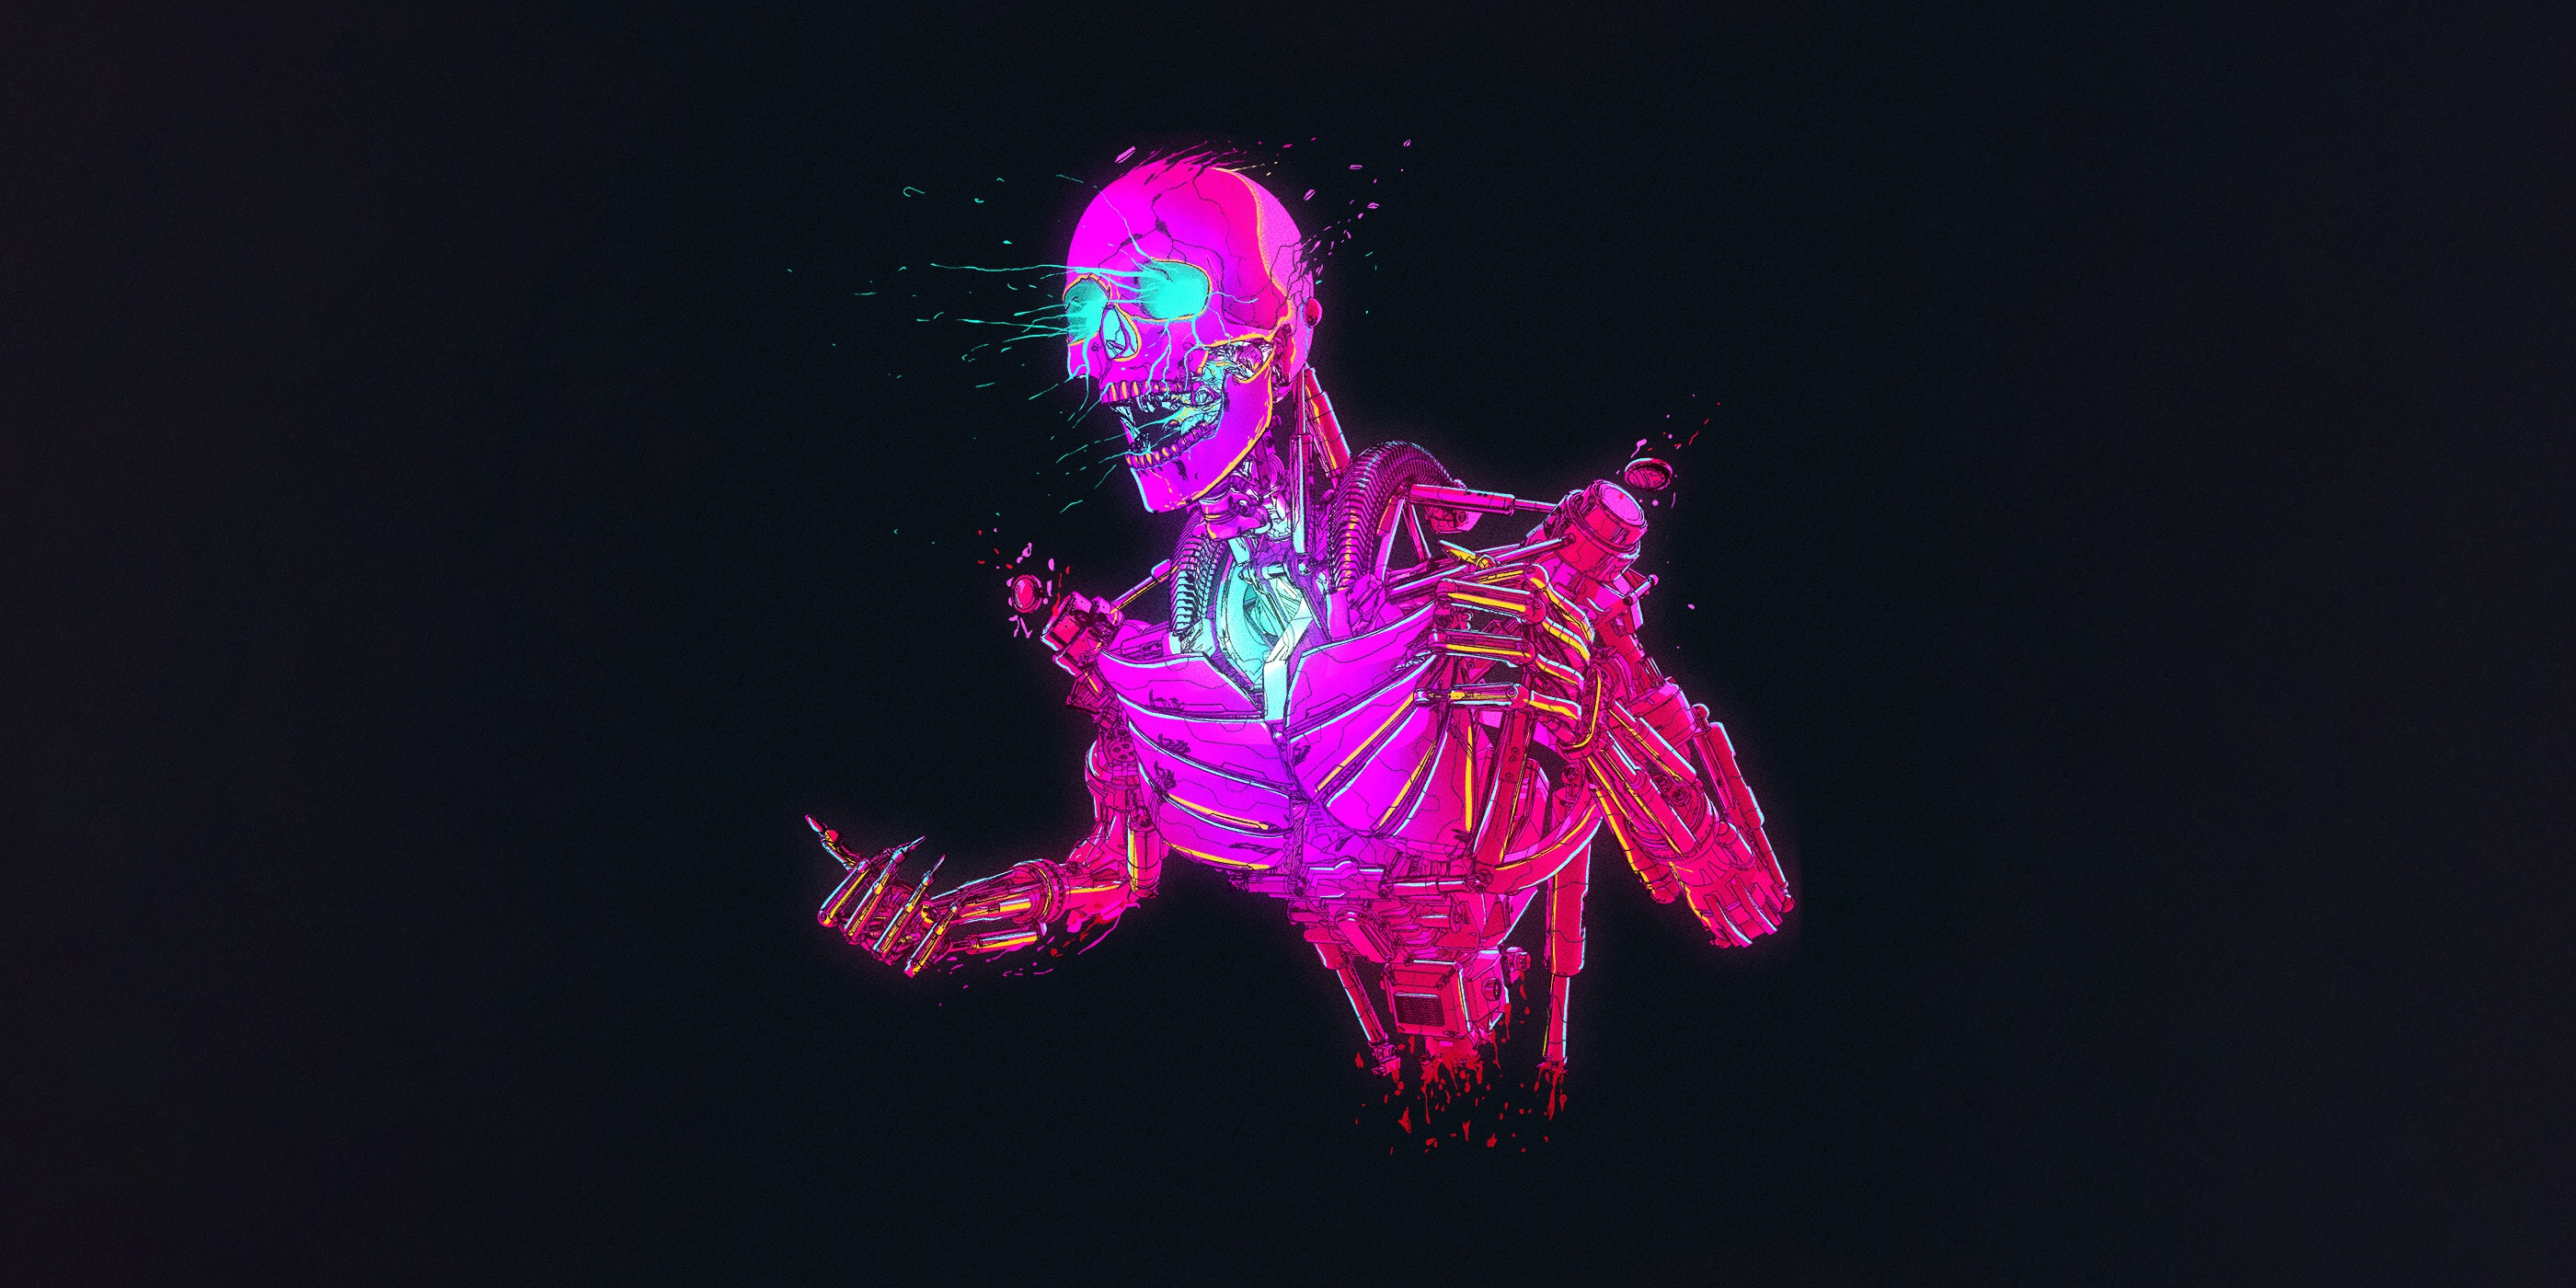 Cyberpunk logo animation фото 76